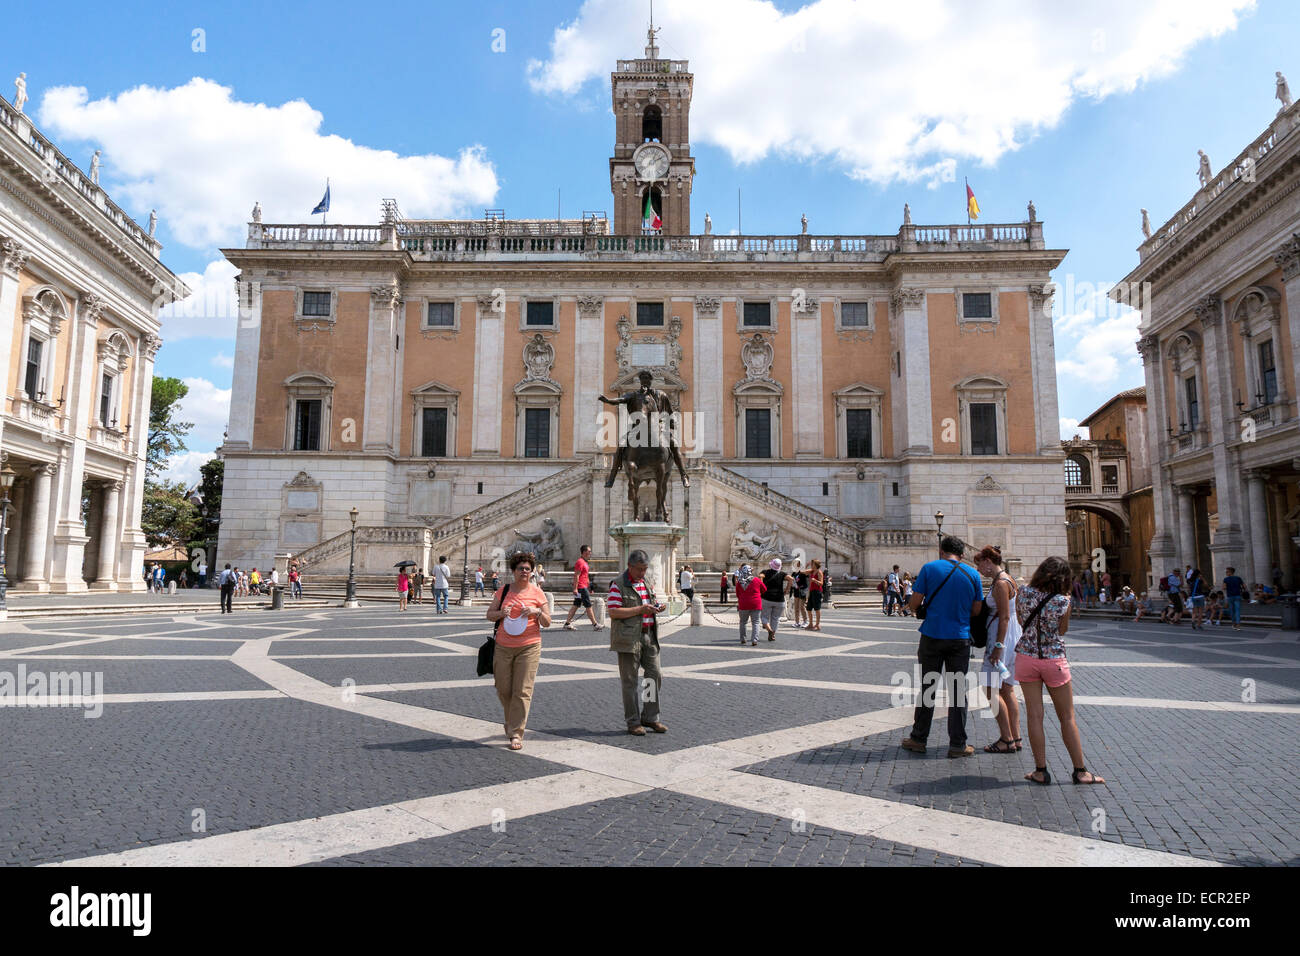 Italie : La Piazza del Campidoglio et le Palazzo Senatorio, Rome. Photo à partir de 5. Septembre 2014. Banque D'Images